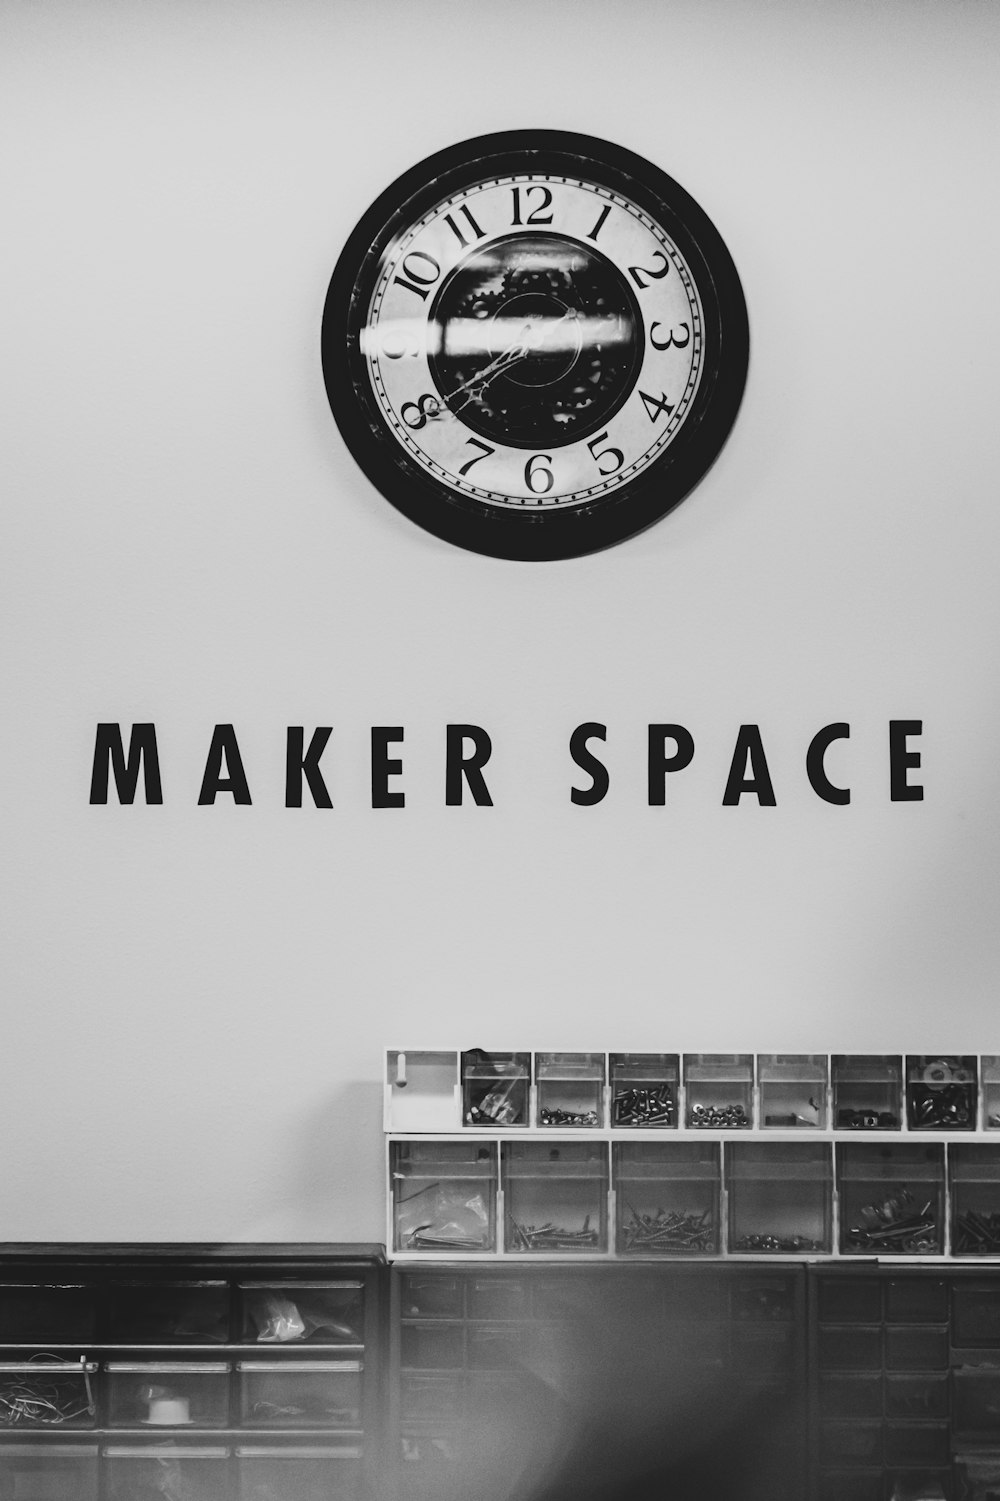 Beschilderung des Maker Space